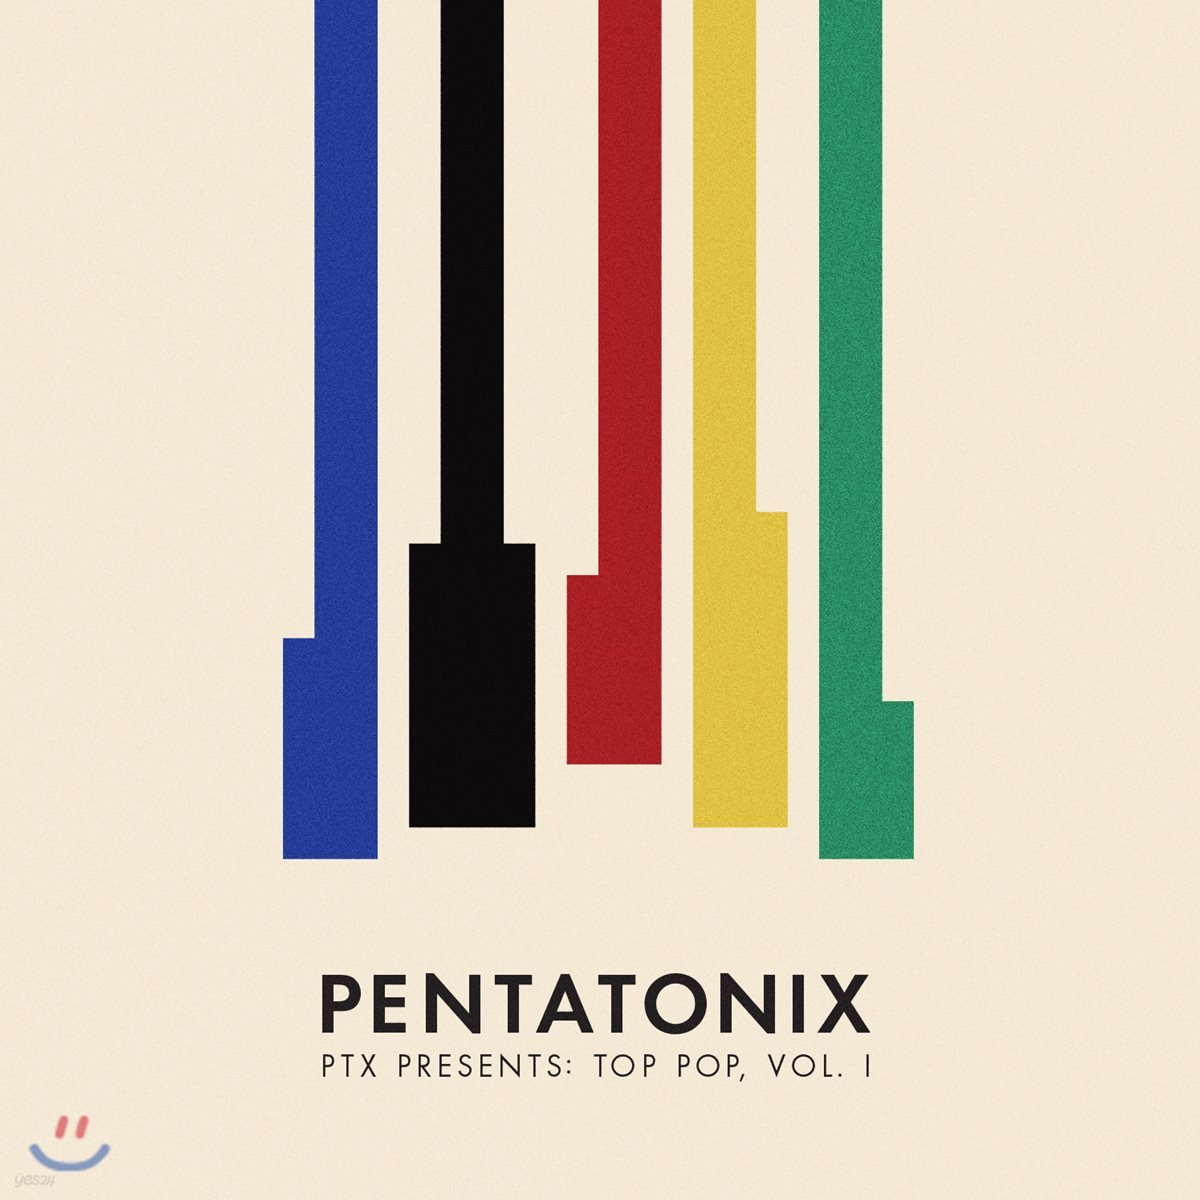 Pentatonix - PTX Presents: Top Pop, Vol. I 펜타토닉스 정규 4집